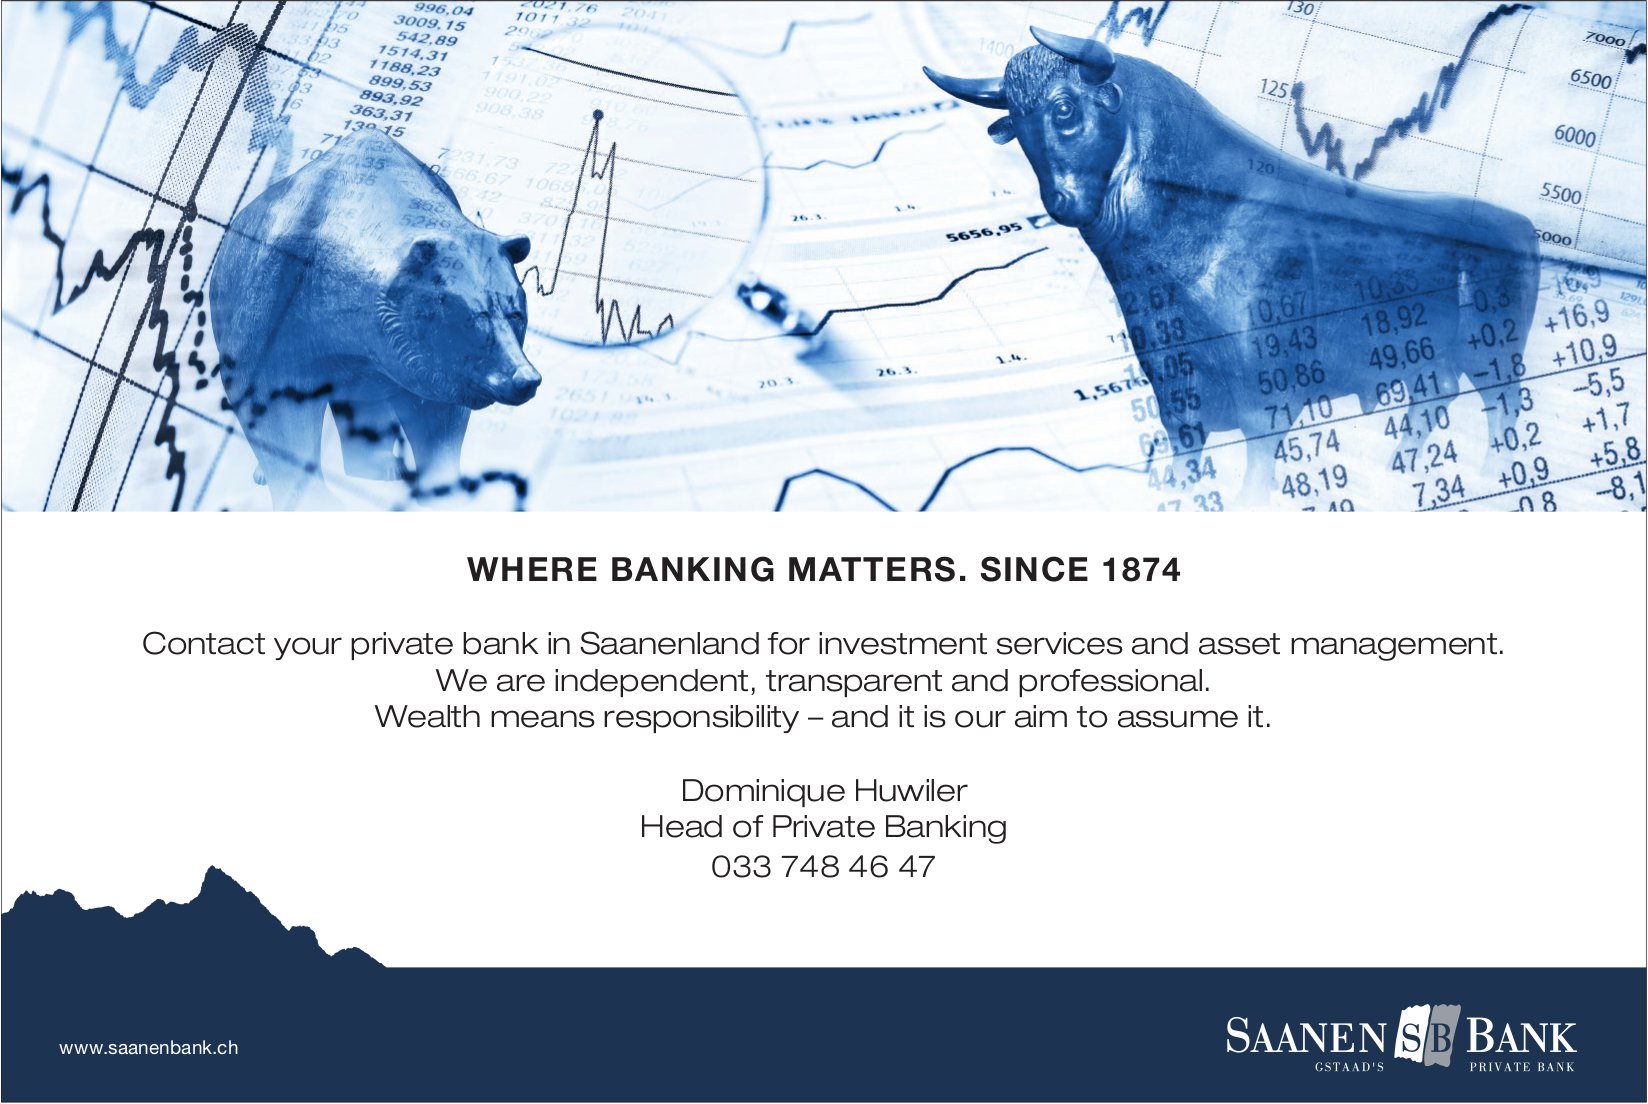 Saanen Bank - Where banking matters. Since 1874